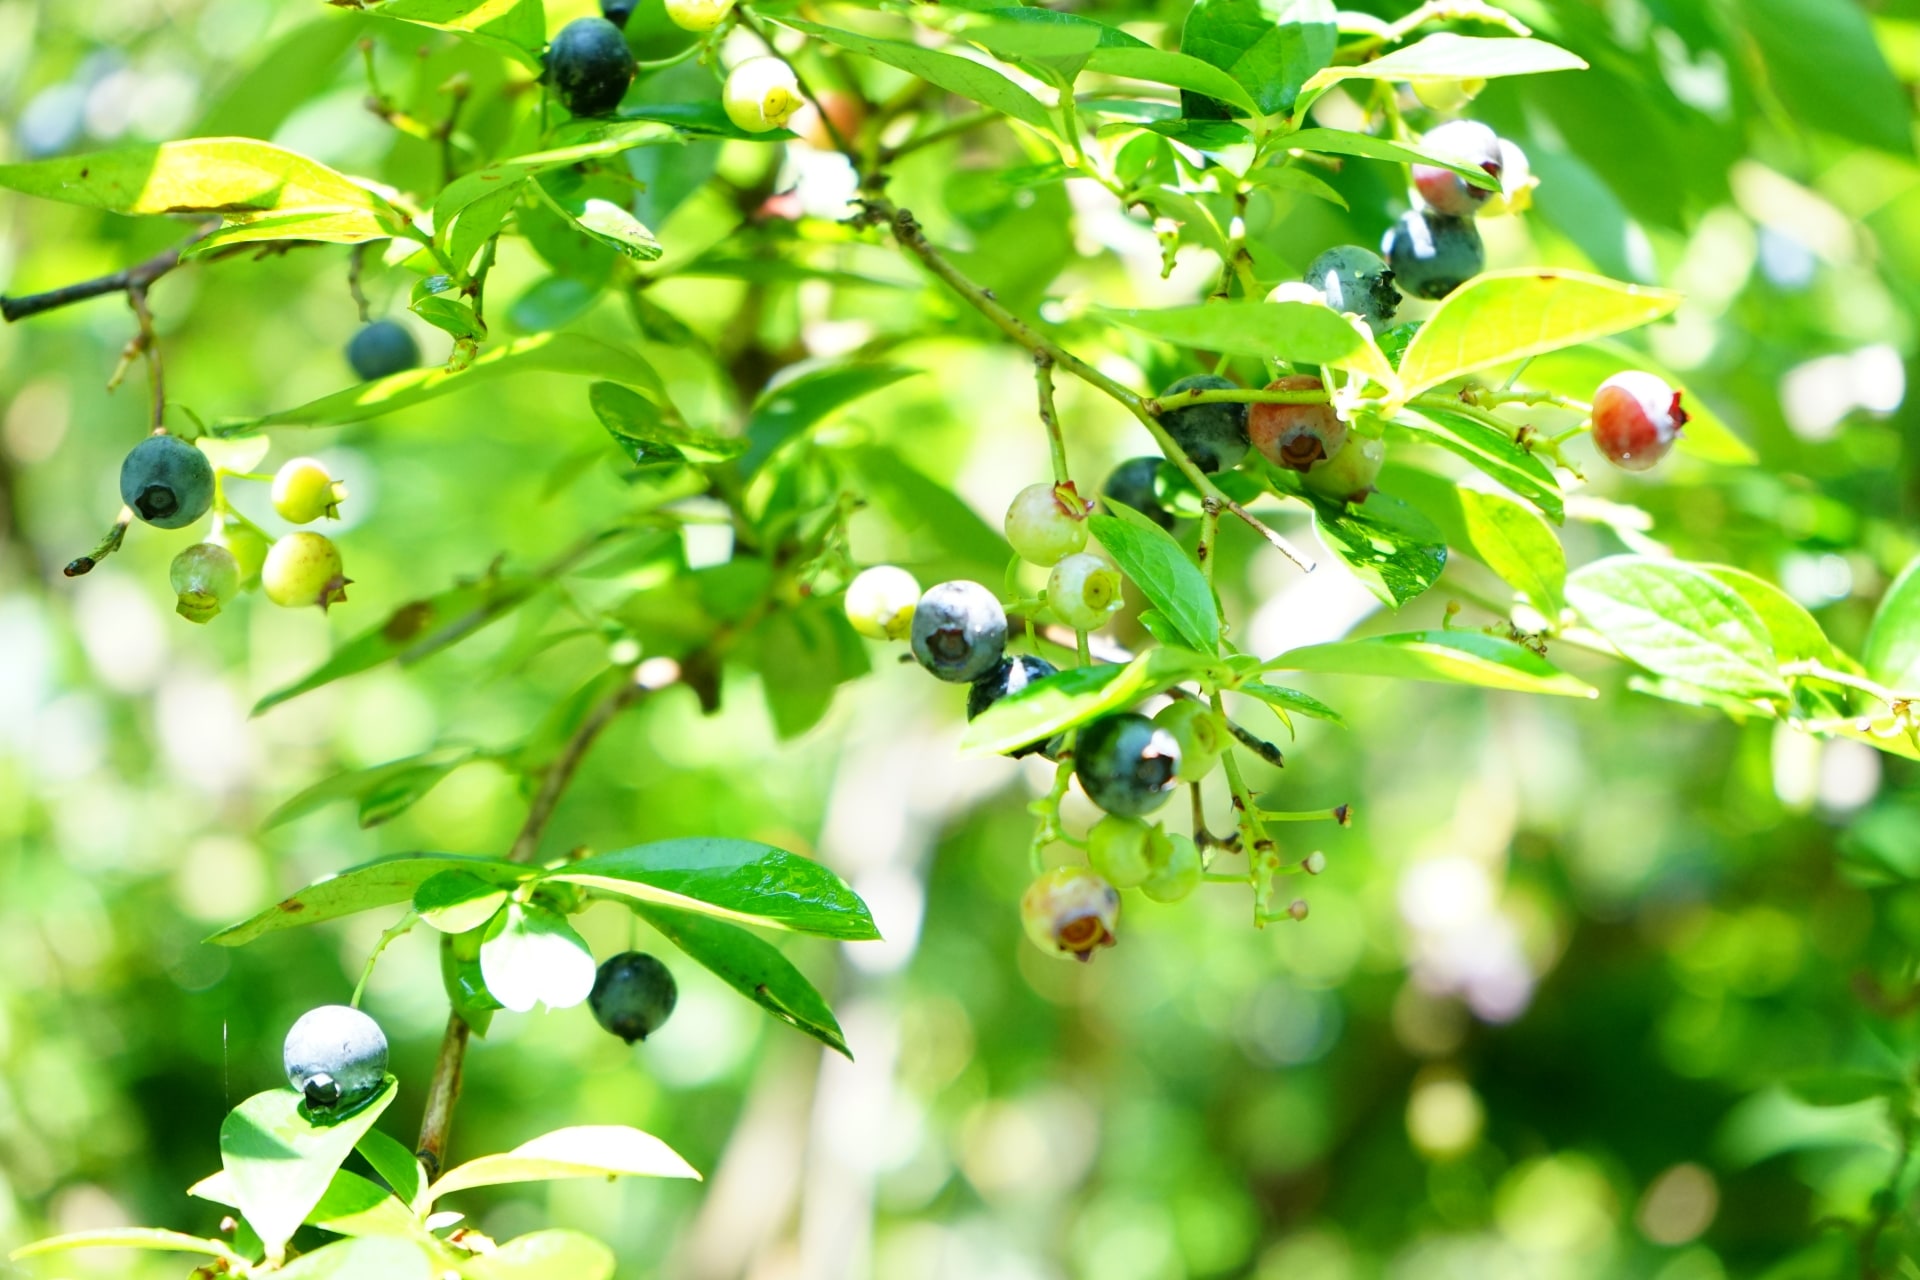 ブルーベリーの大粒な種類や大きく育てる育て方とは ブルーベリーの栽培 鉢植え 剪定 肥料 方法と健康効果ナビ